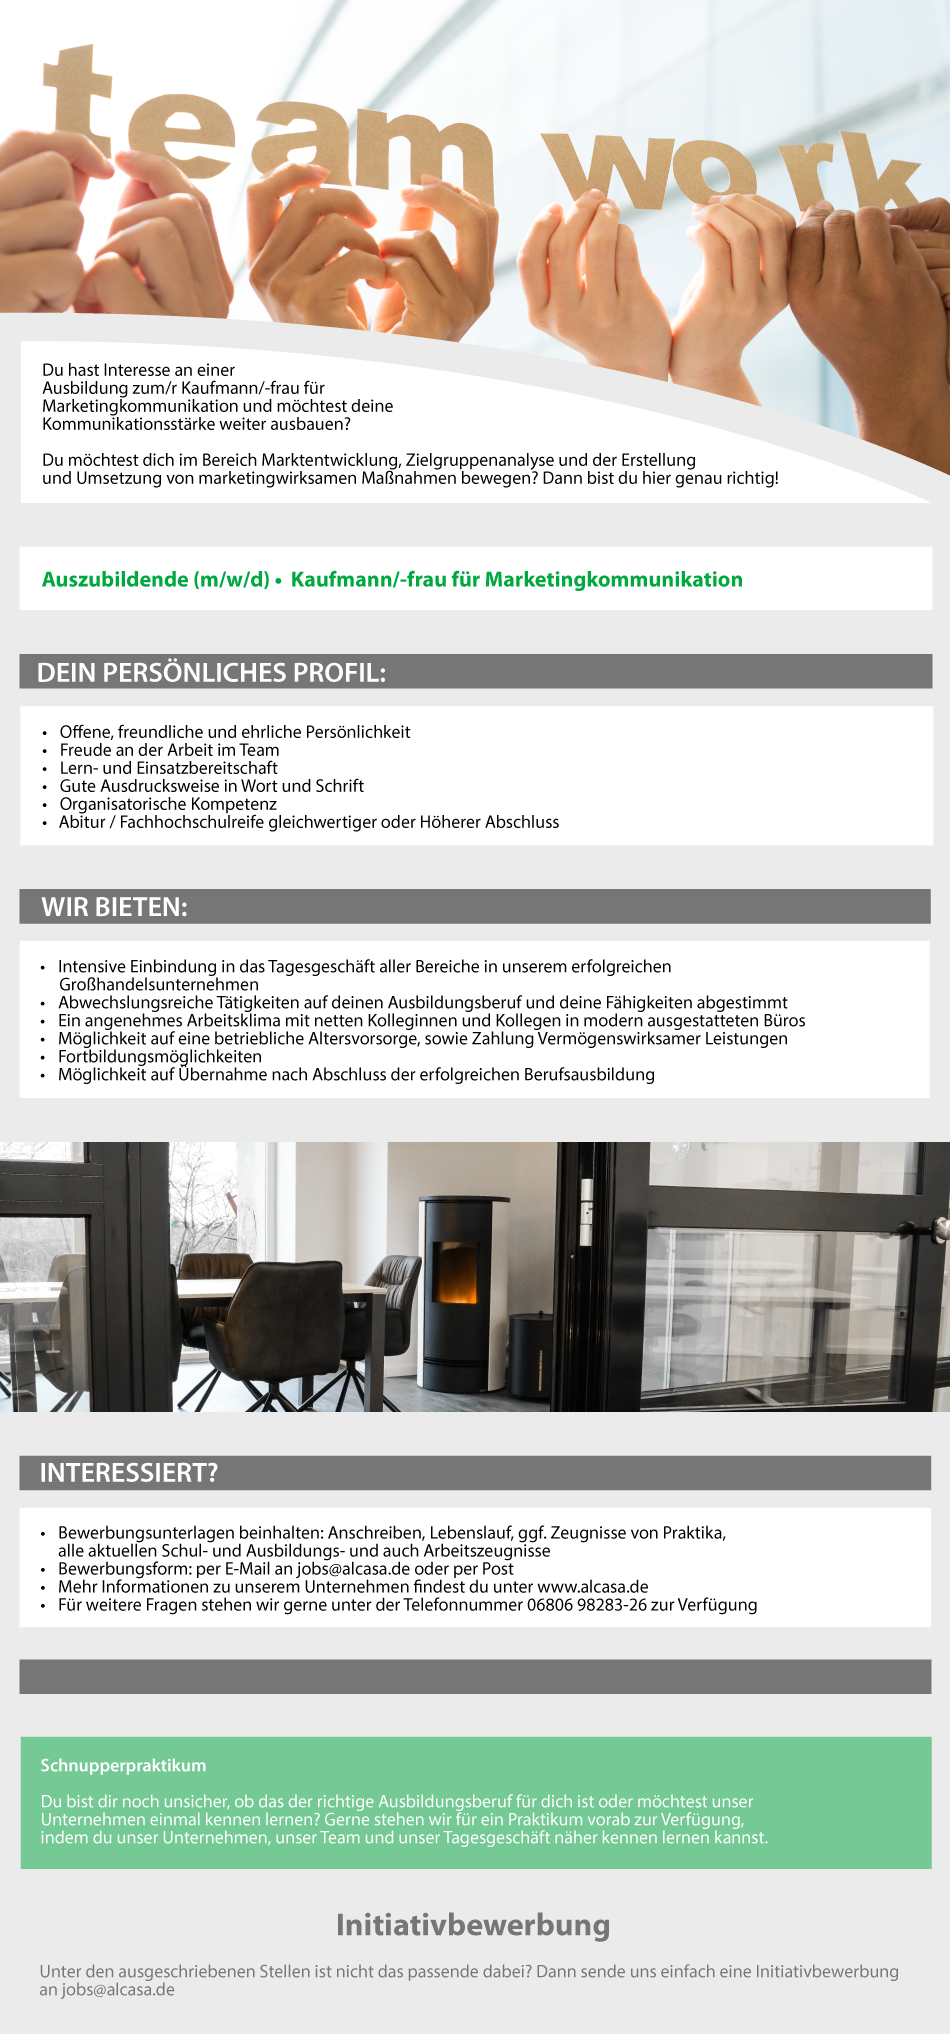 Anzeige_Ausbildung_Marketingkommunikation